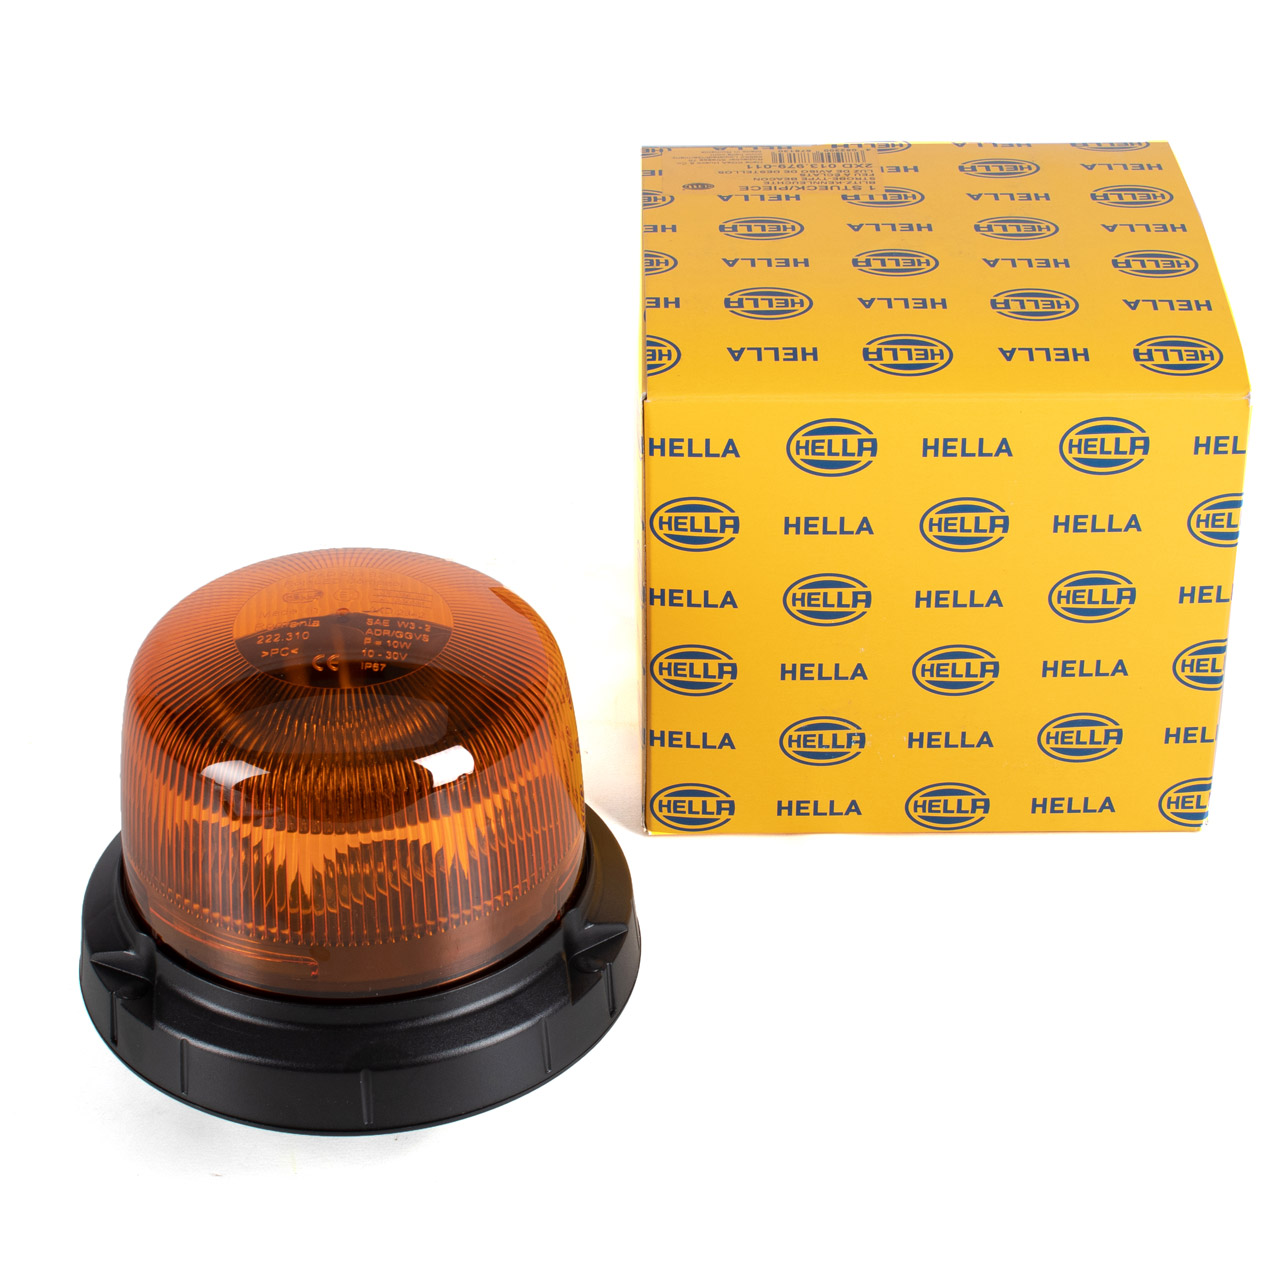 HELLA 2XD013979011 LED Warnleuchte Blitz-Kennleuchte Rundumleuchte RotaLED Compact gelb